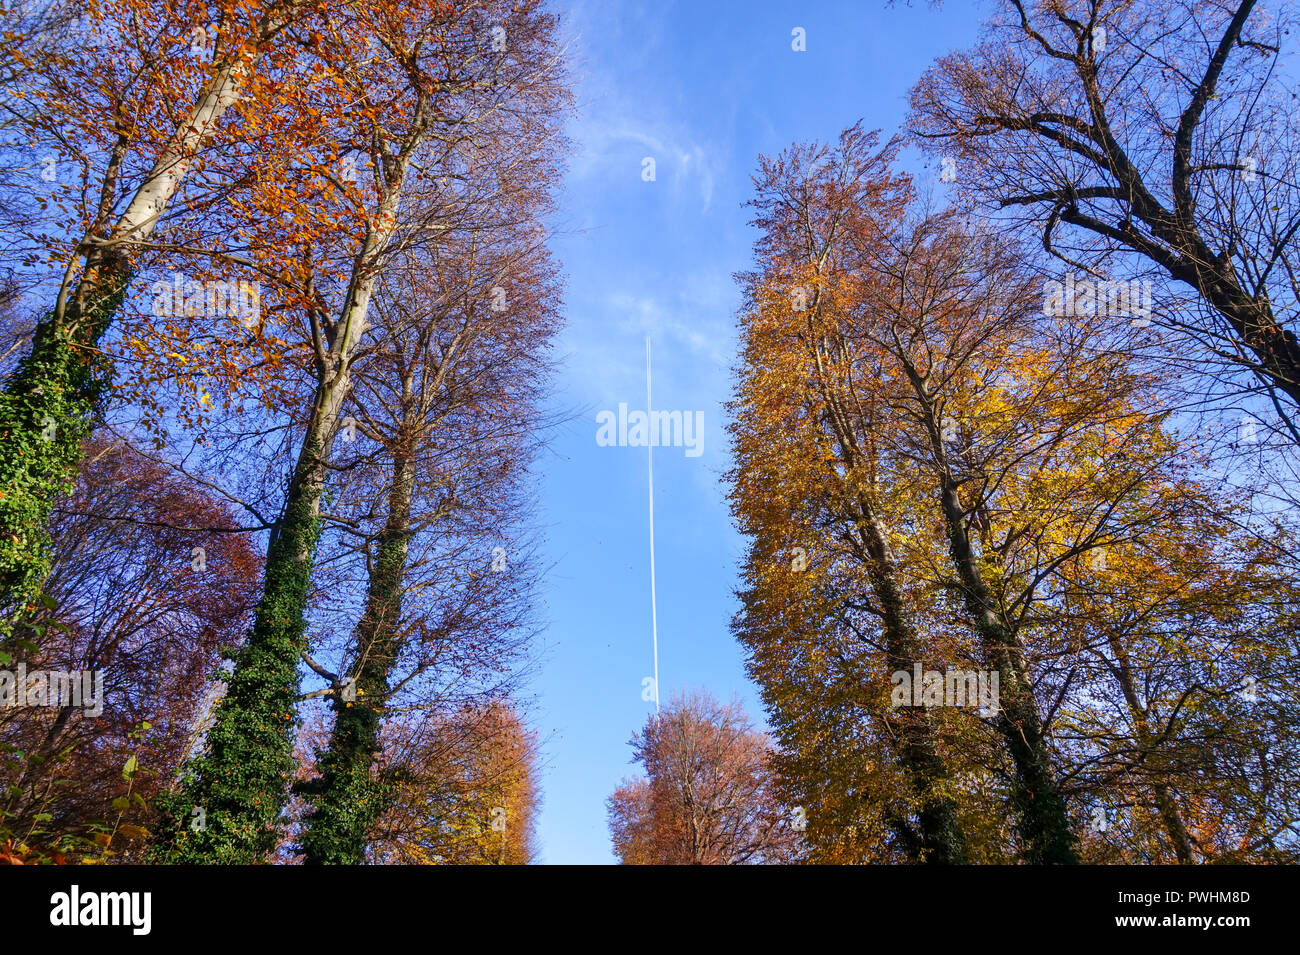 Jetstream d'un avion entre les arbres en automne Banque D'Images